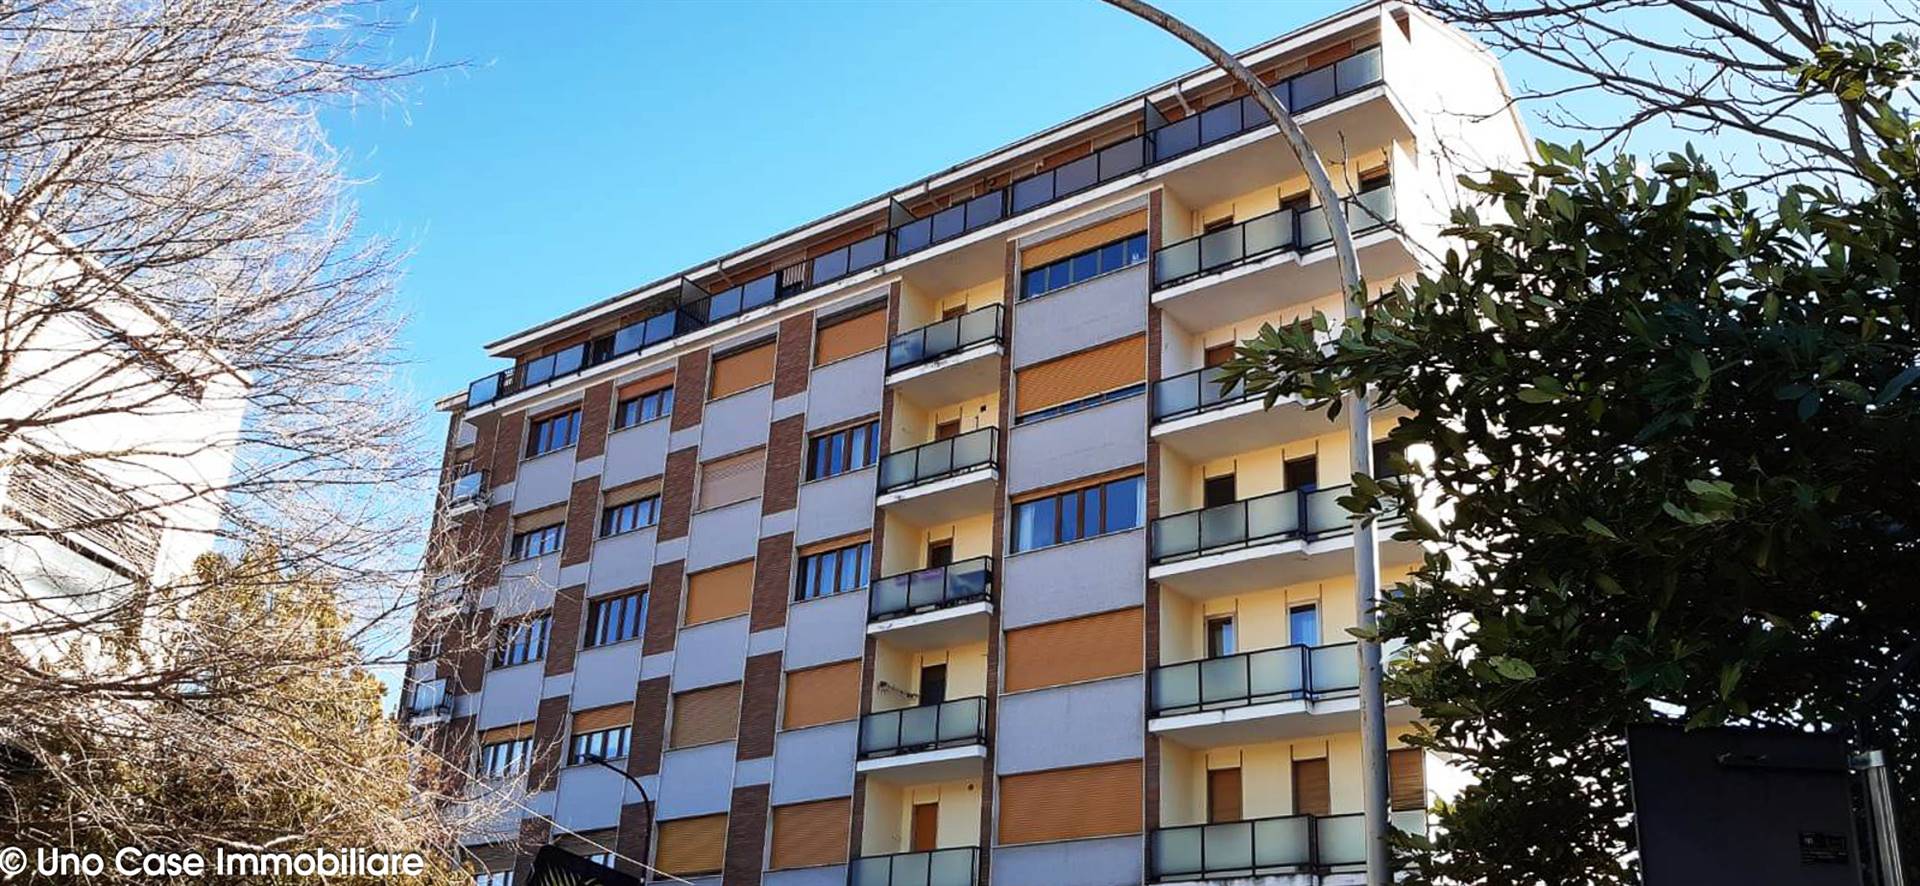 Appartamento in vendita a Ivrea, 3 locali, zona Località: FIORANA, prezzo € 55.000 | PortaleAgenzieImmobiliari.it